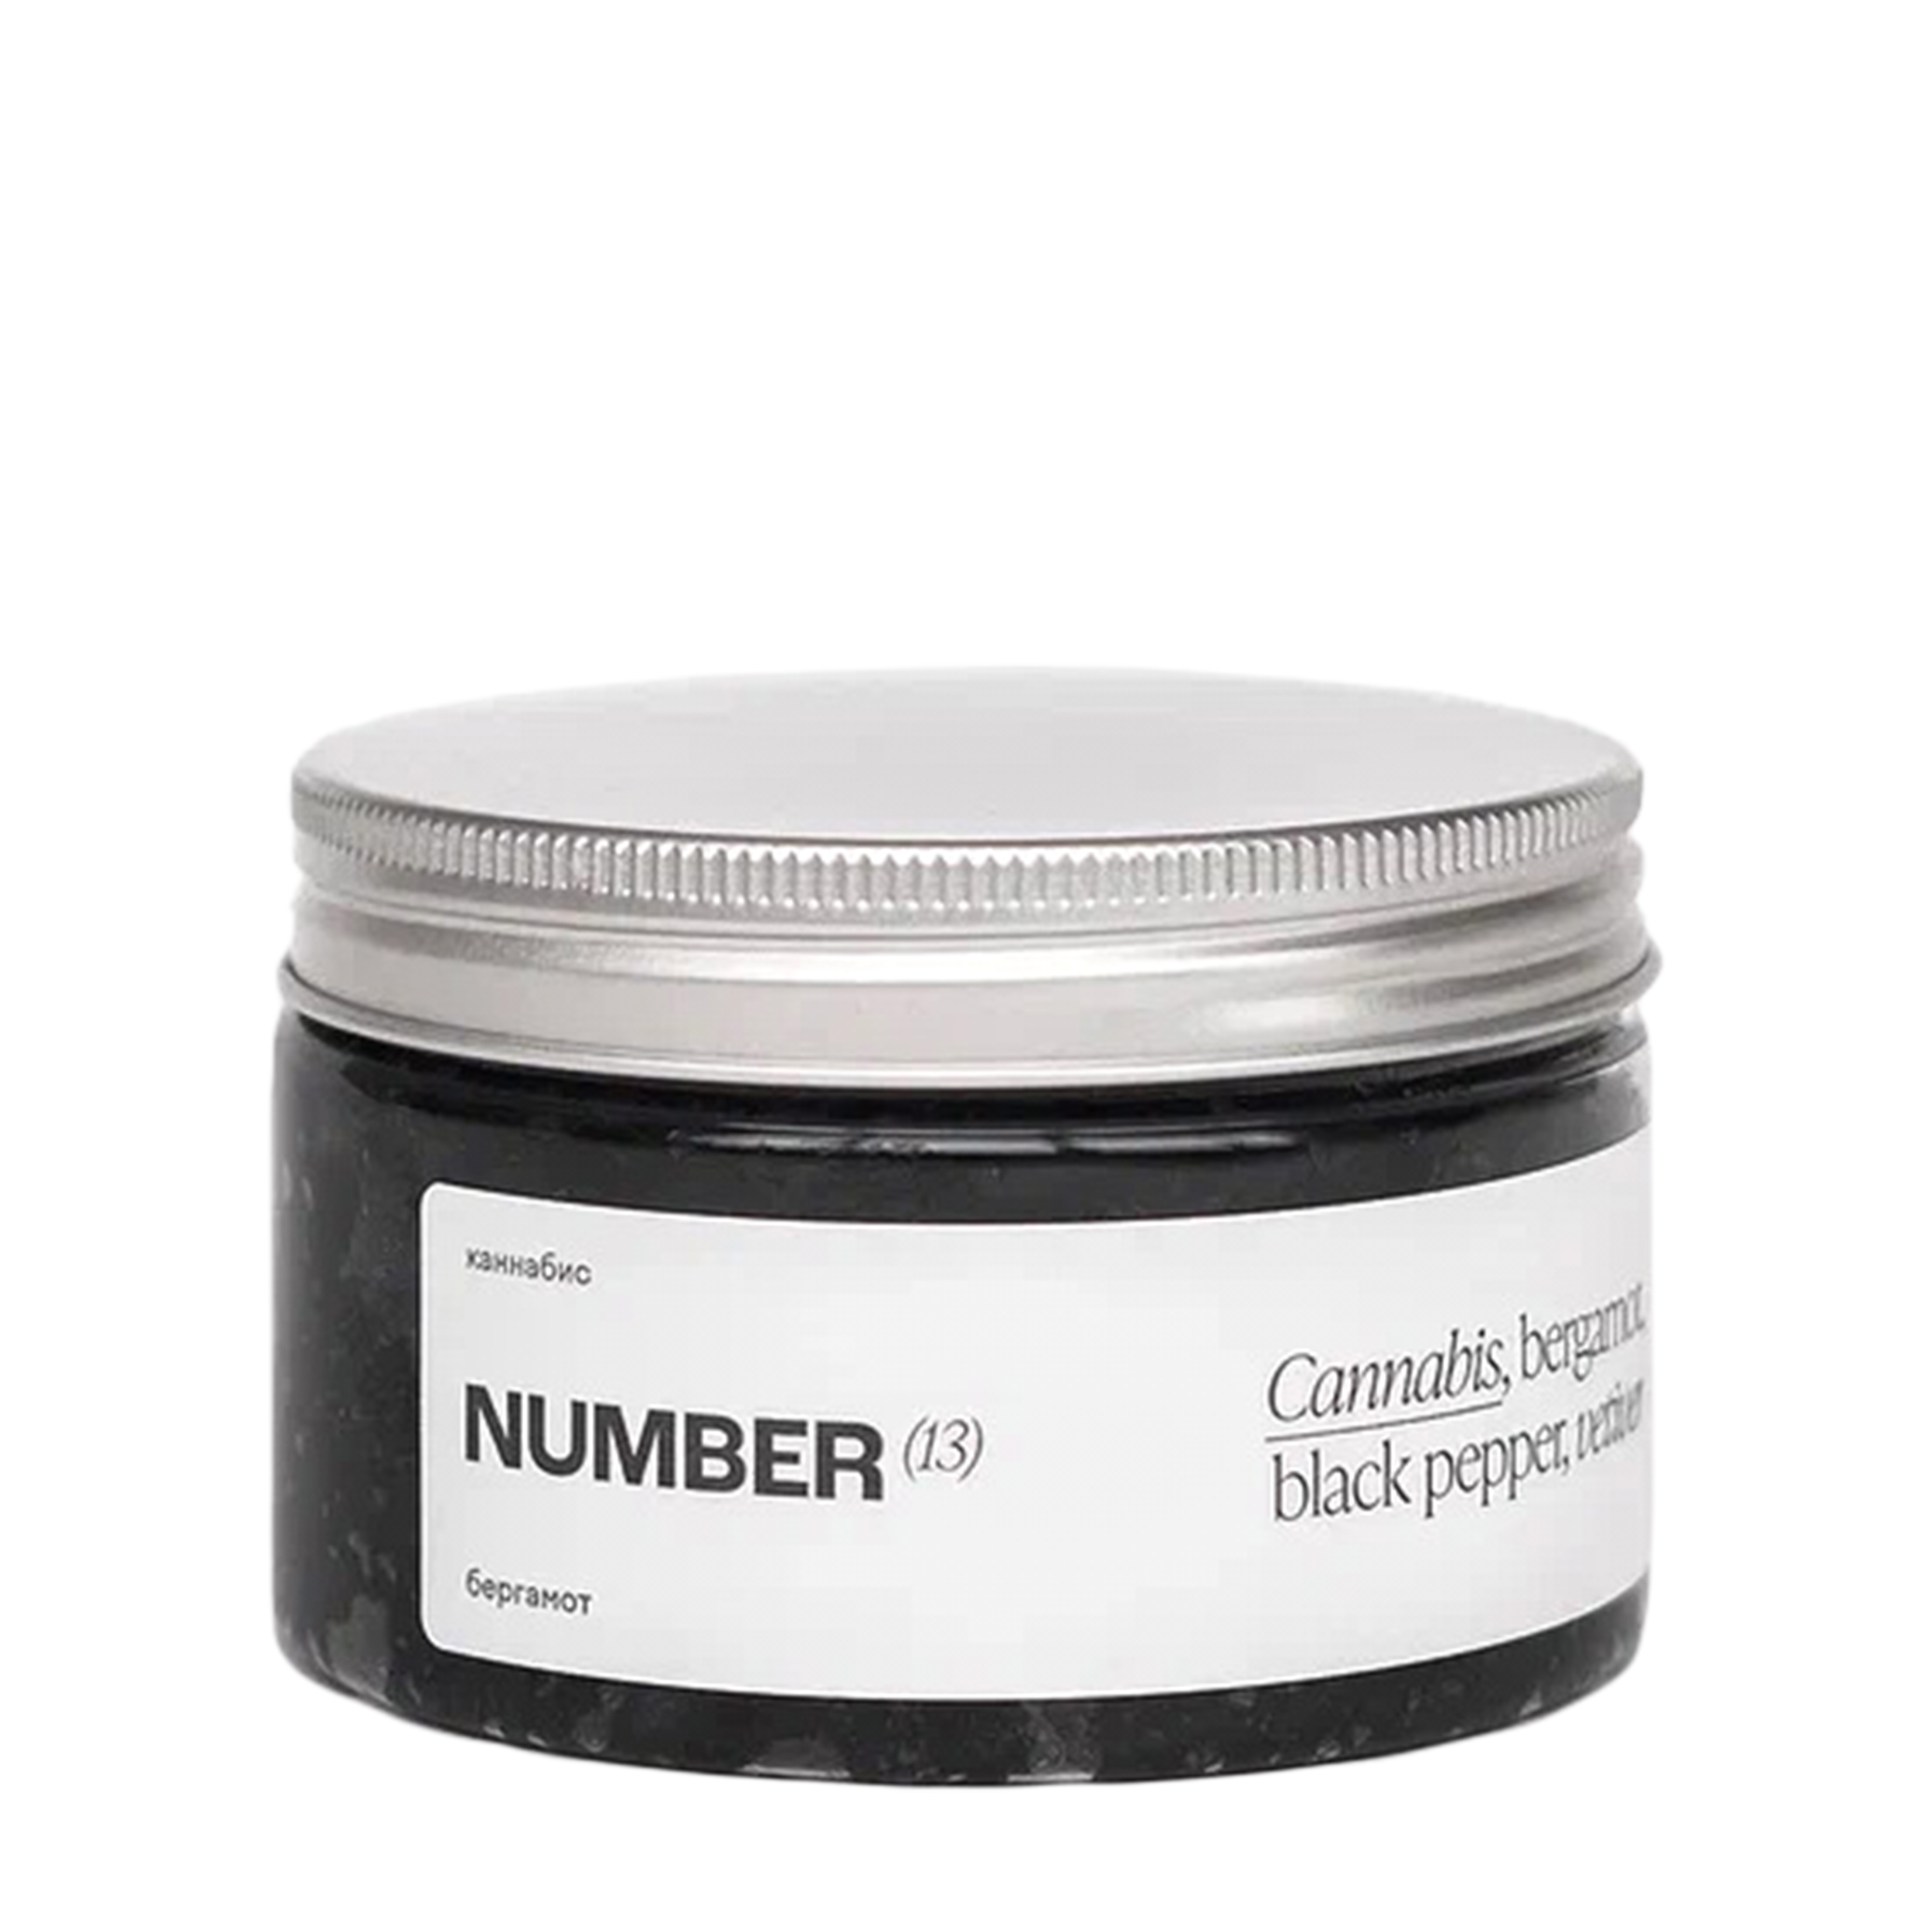 NUMBER(13) NUMBER(13) Солевой скраб для тела с бамбуковым углем с ароматом «Каннабис, бергамот, черный перец, ветивер» 250 мл NUM13_BLACKSCRUB - фото 1